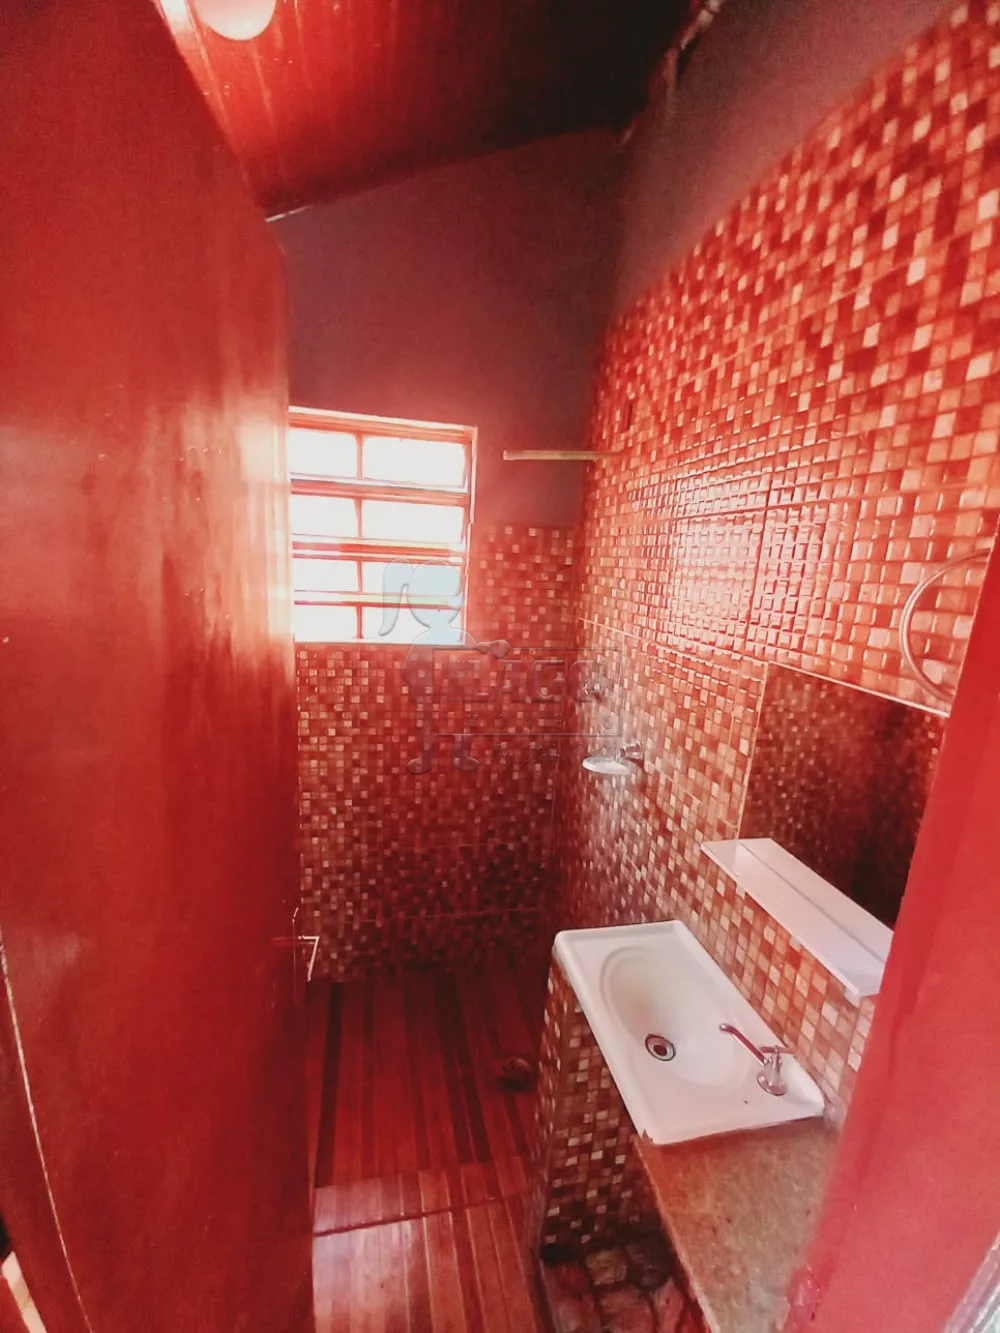 Alugar Casas / Padrão em Ribeirão Preto R$ 950,00 - Foto 14